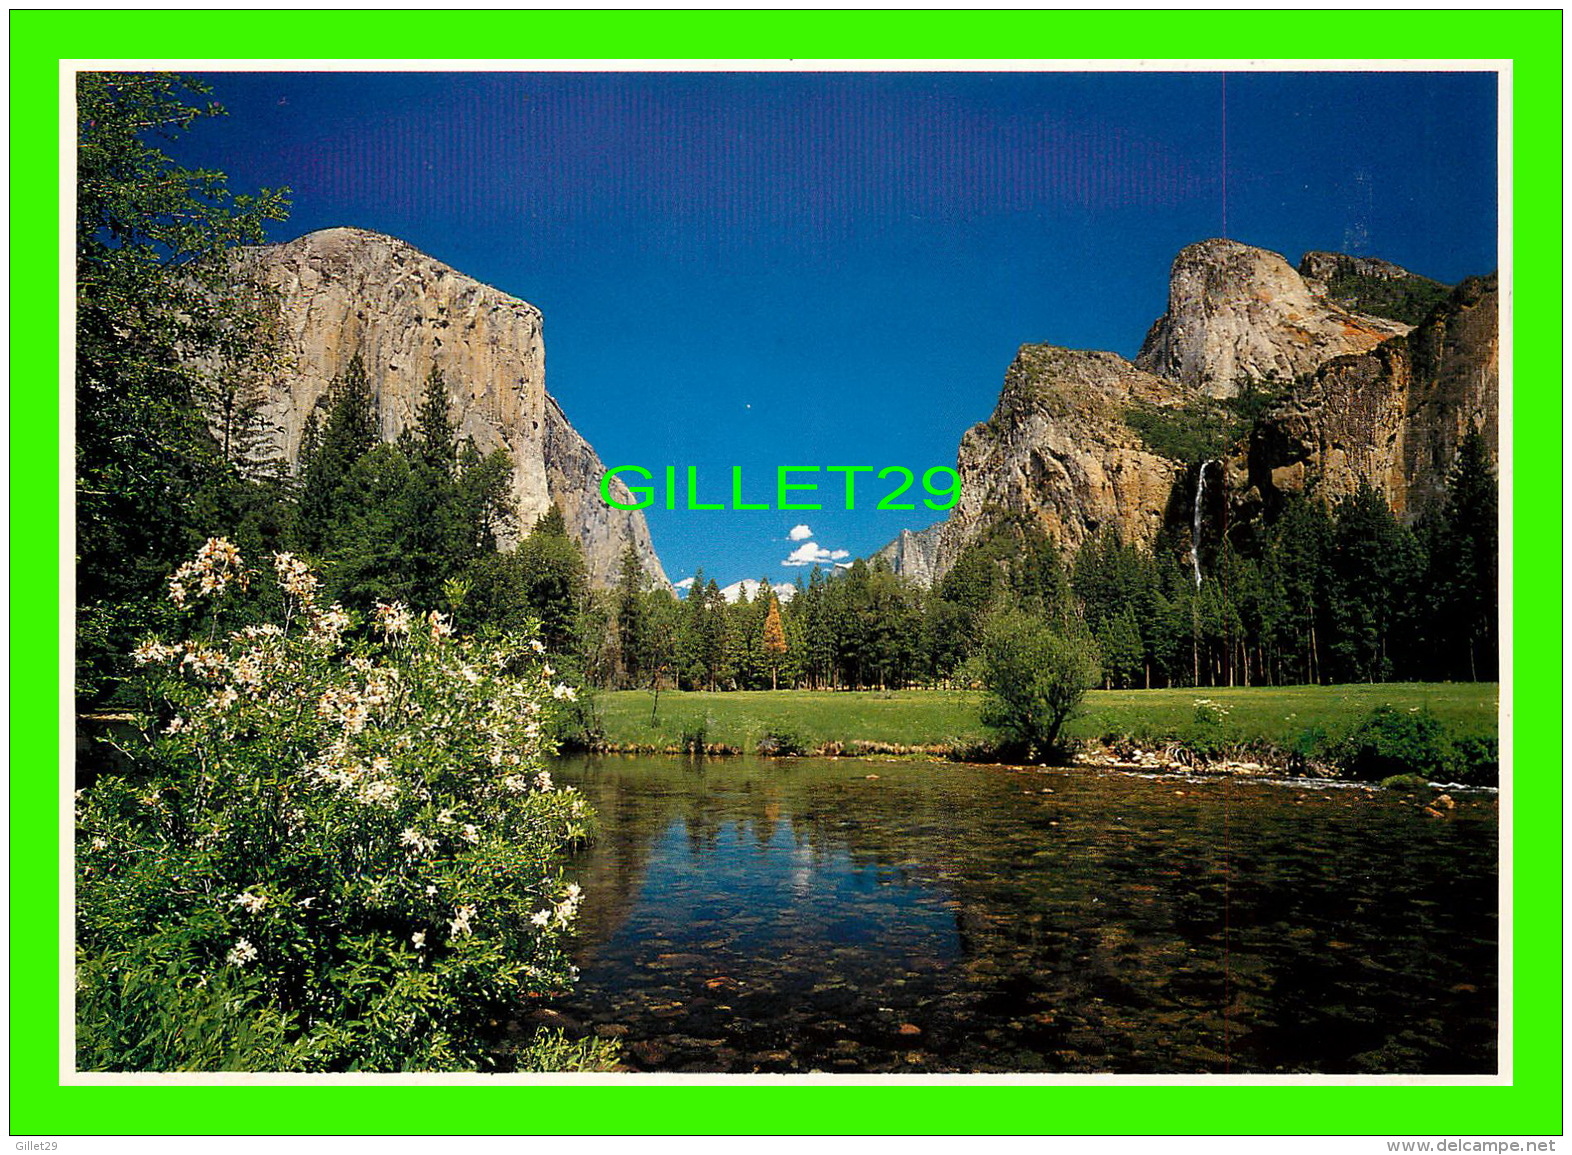 YOSEMITE, CA - EL CAPITAN, BRIDAL VEIL FALLS &amp; THE MERCED RIVER - PHOTOGRAPHER, JOHN WAYMAN - - Yosemite